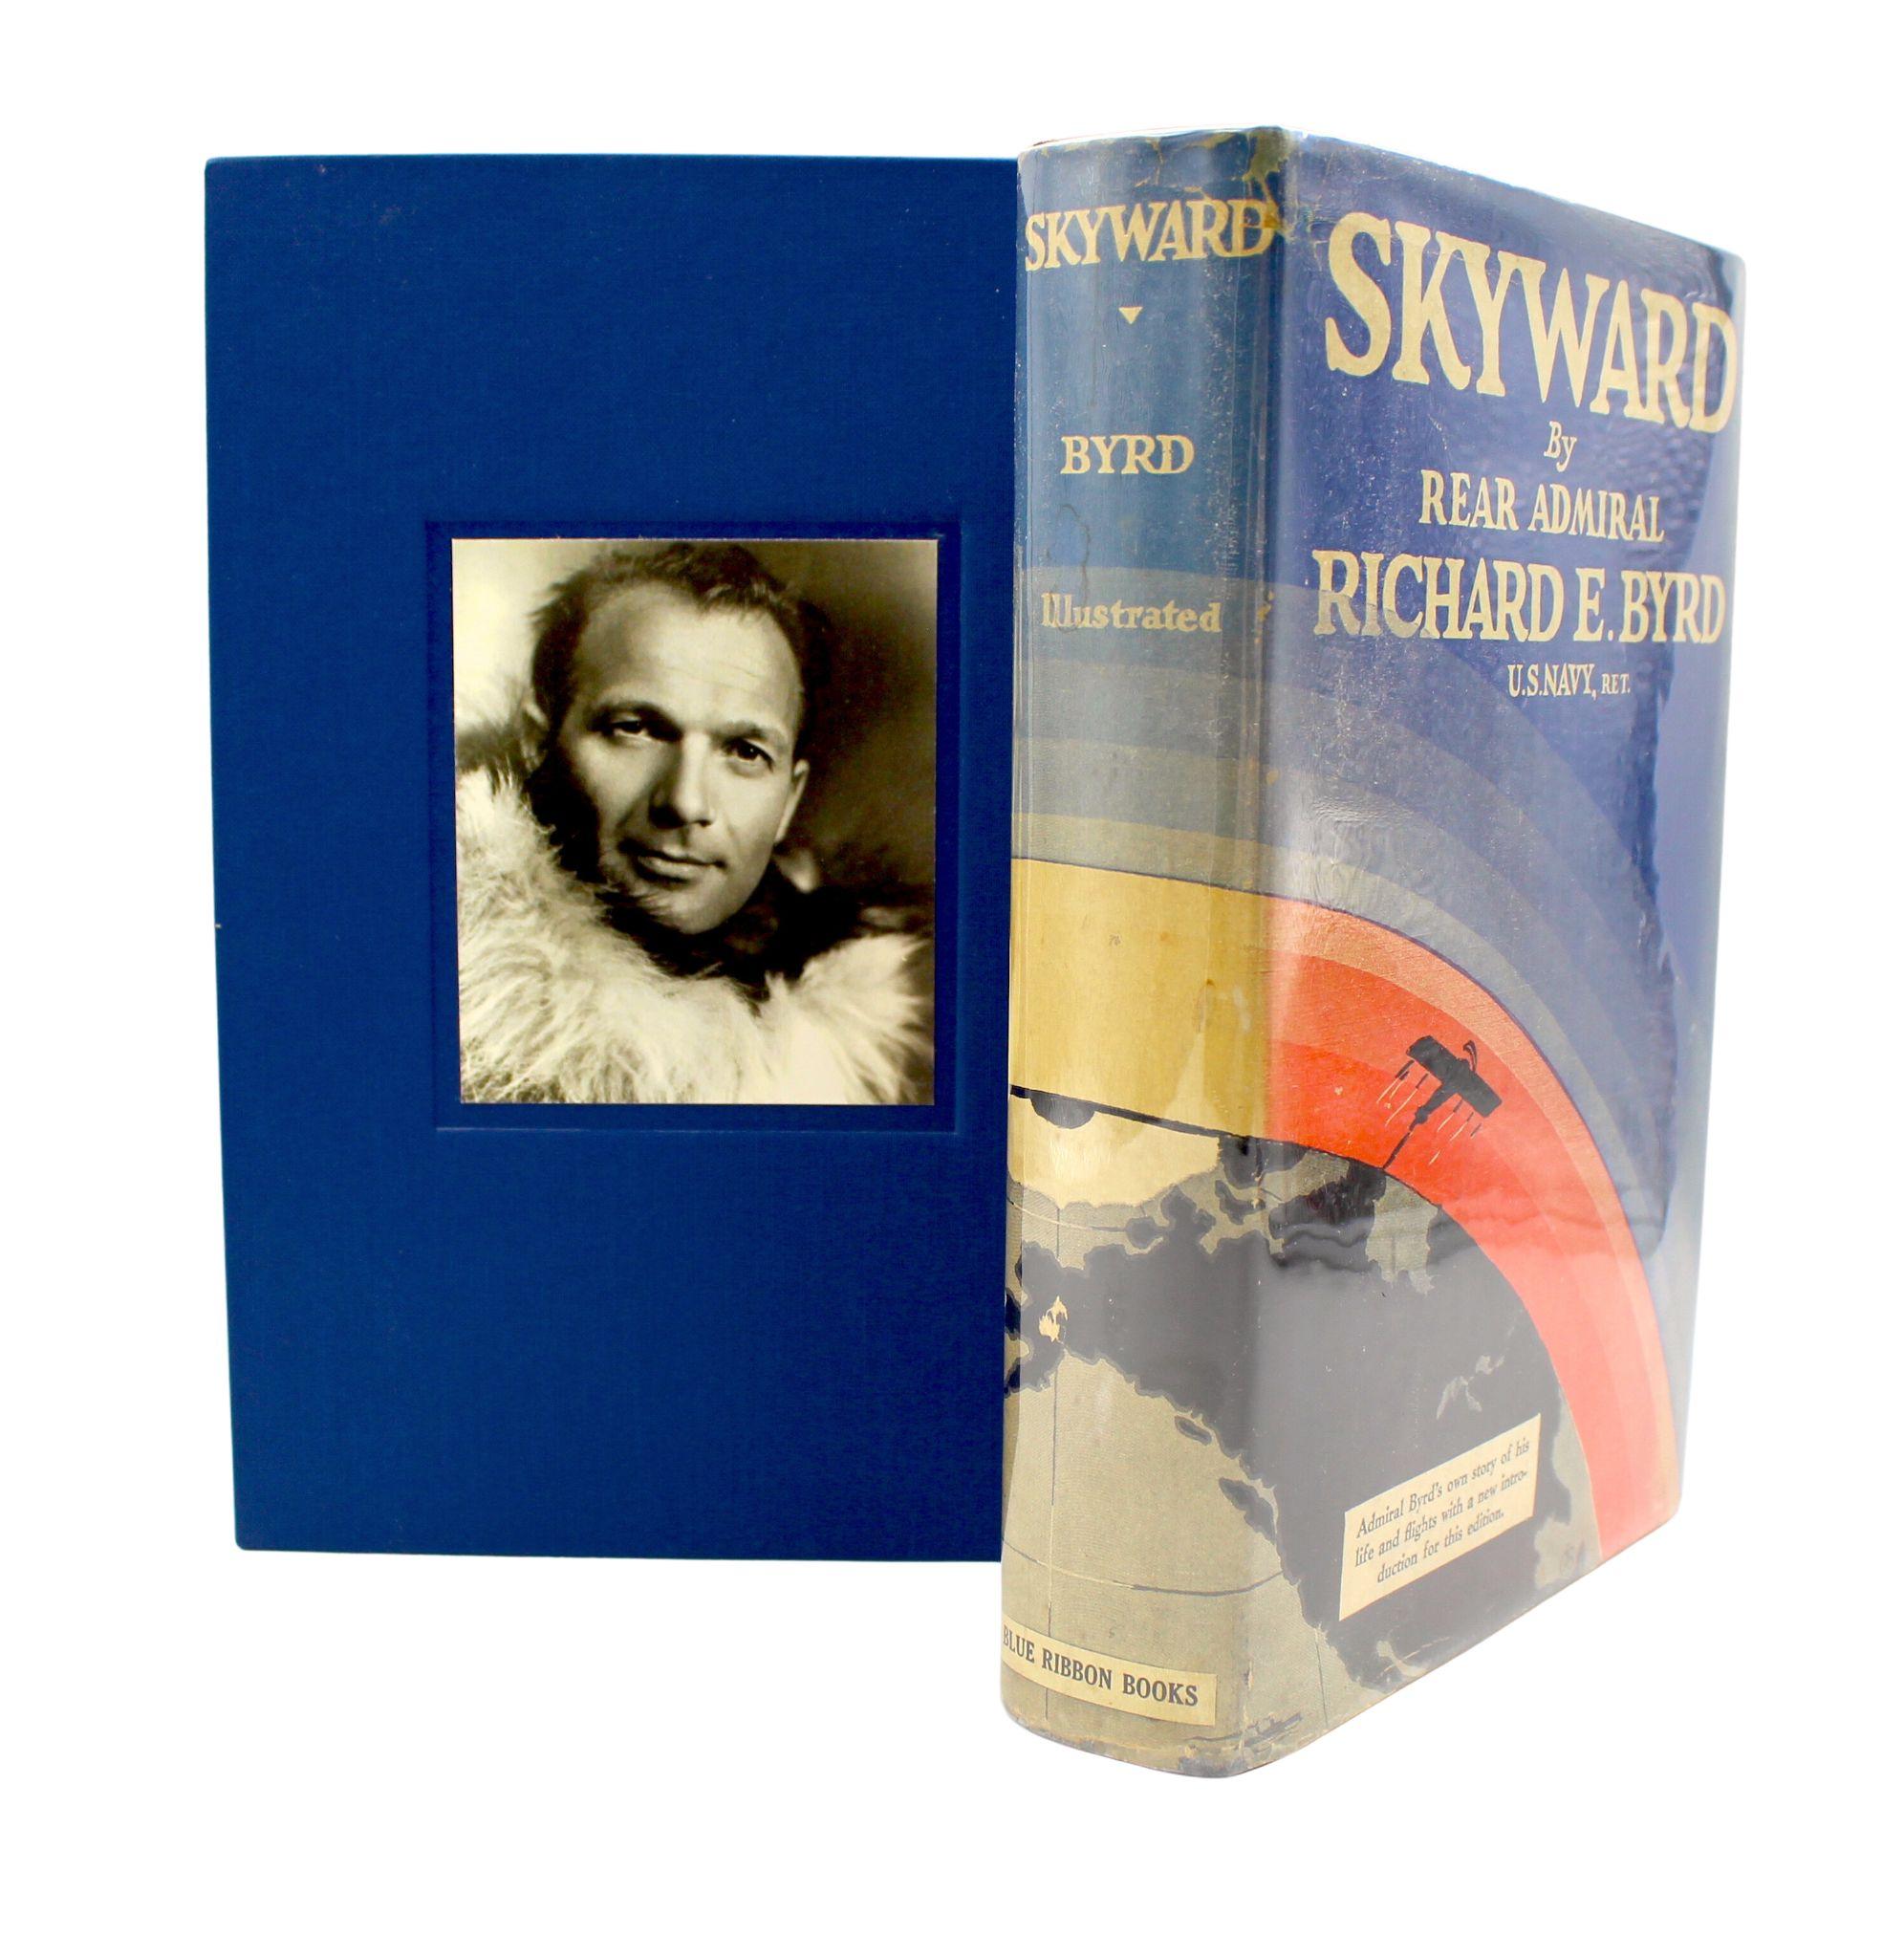 Byrd, Richard E. Skyward. New York : Blue Ribbon Books, 1931. Octavo. Première édition, onzième impression. Couverture rigide d'origine et jaquette illustrée d'origine. Présenté dans un nouvel étui d'archives. 

Il s'agit d'une première édition de